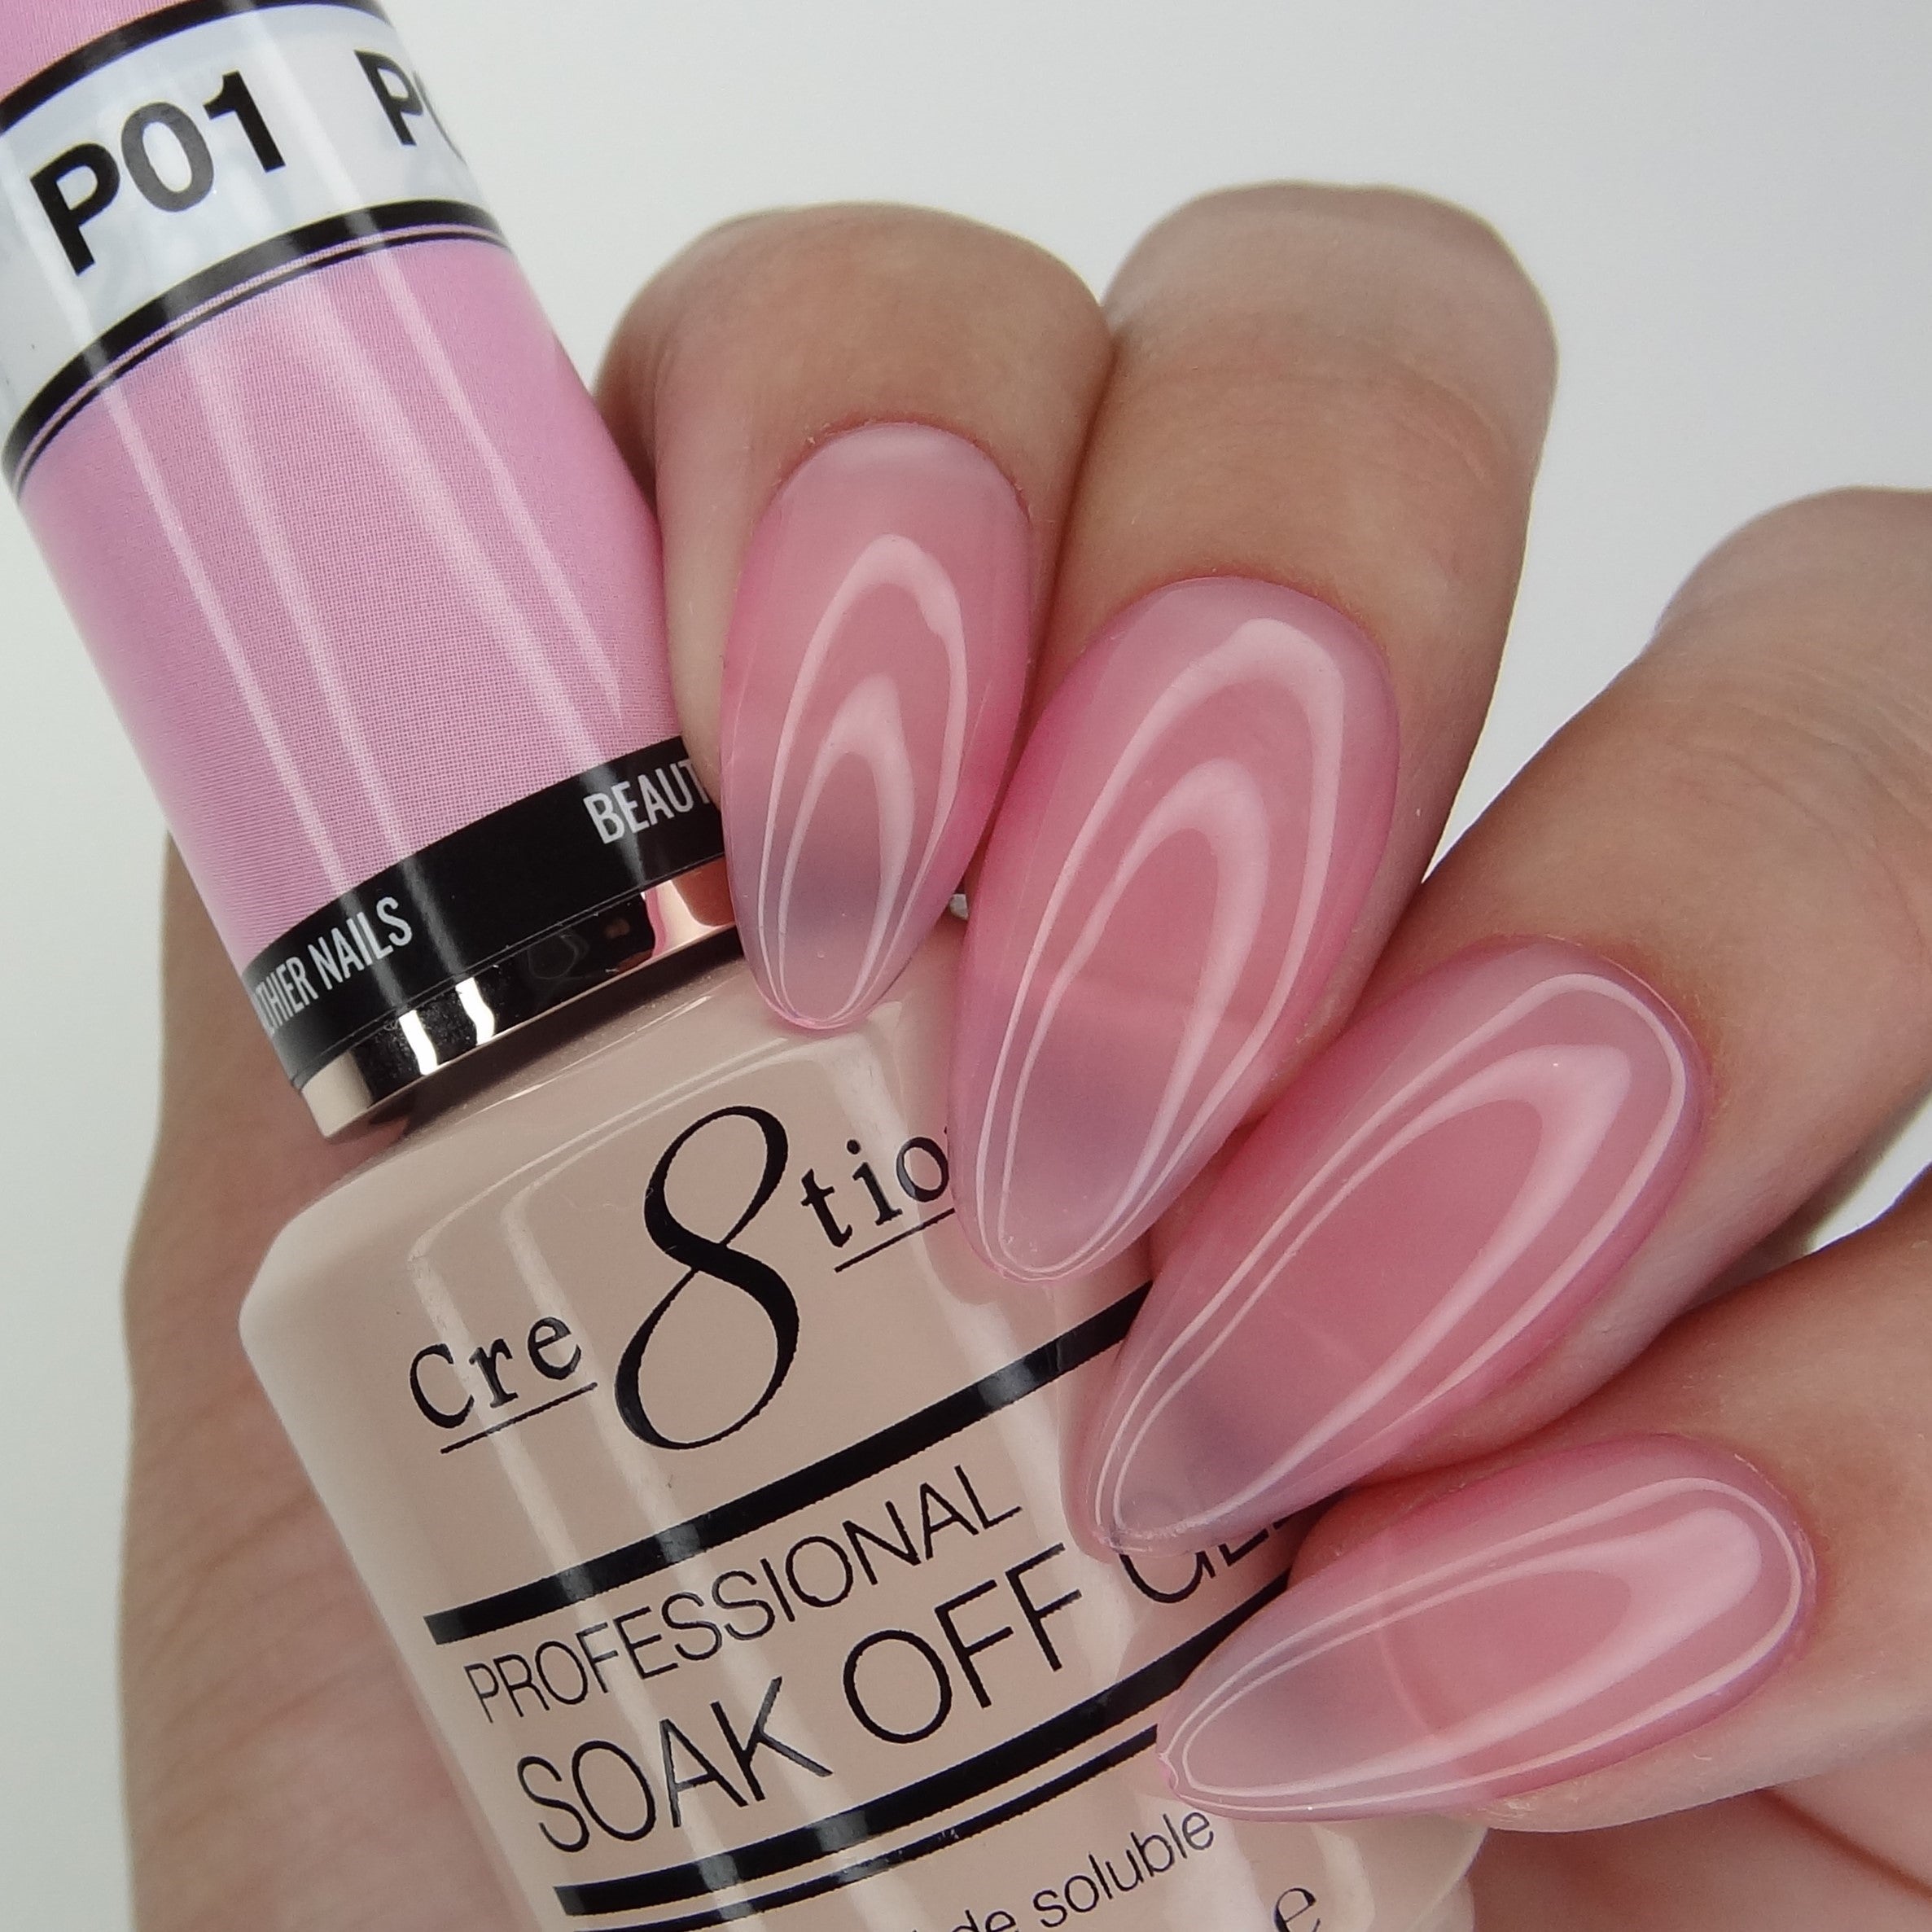 Cre8tion - Nail Art - Wax and Dotting Tool Pink – Skylark Nail Supply